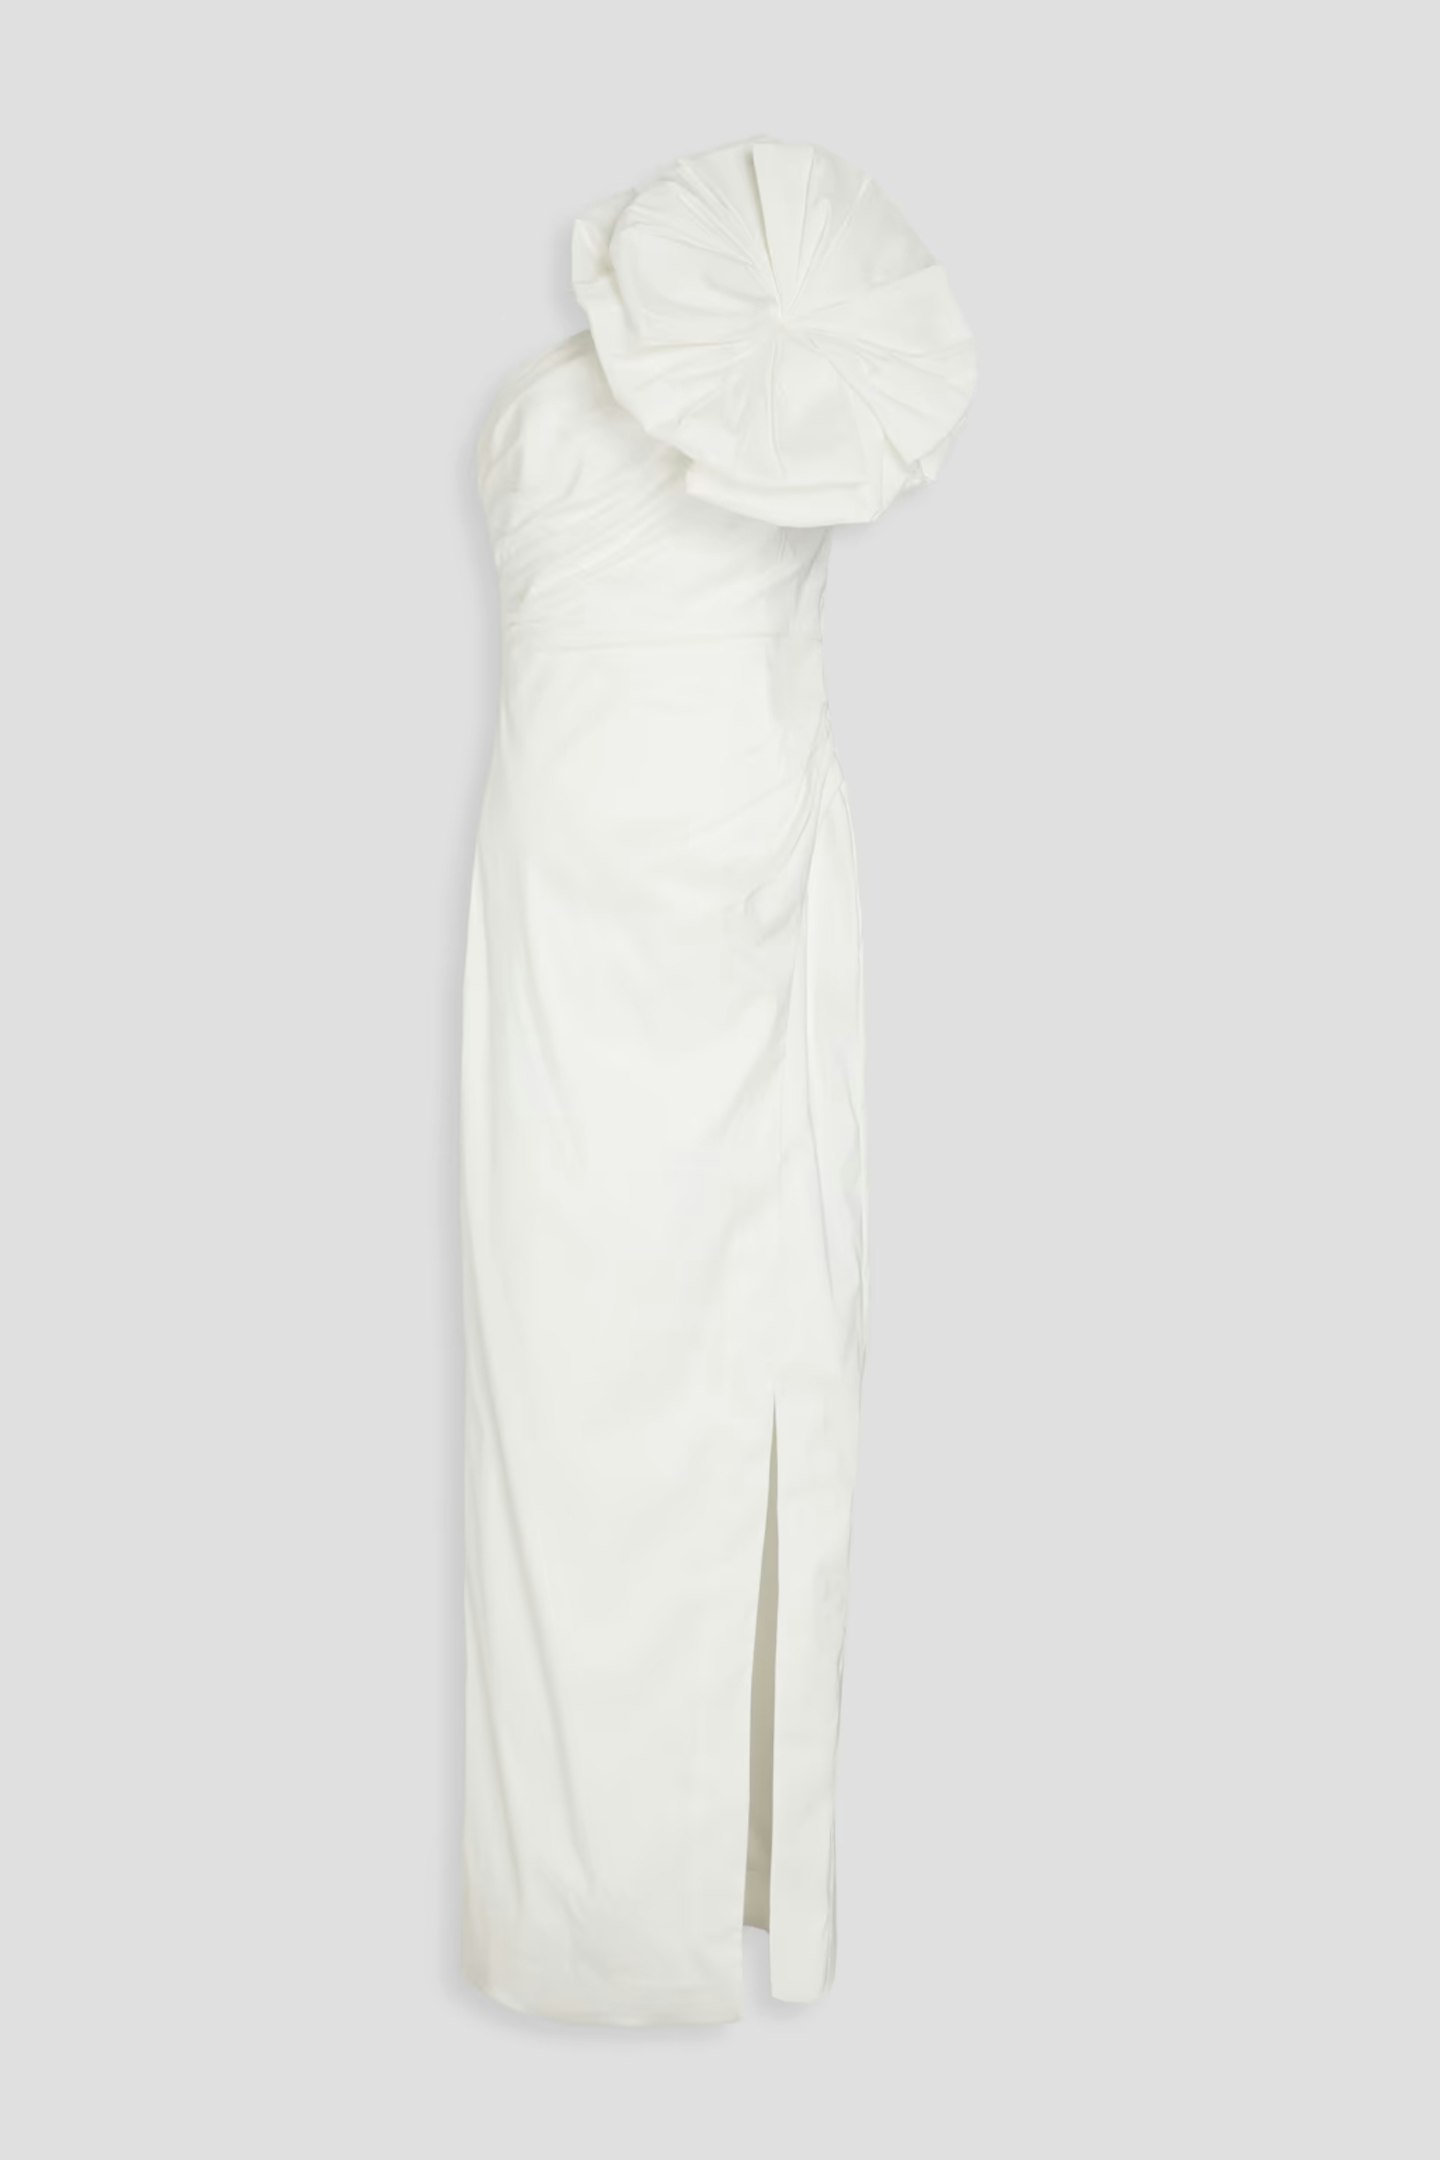 rachel gilbert gown 